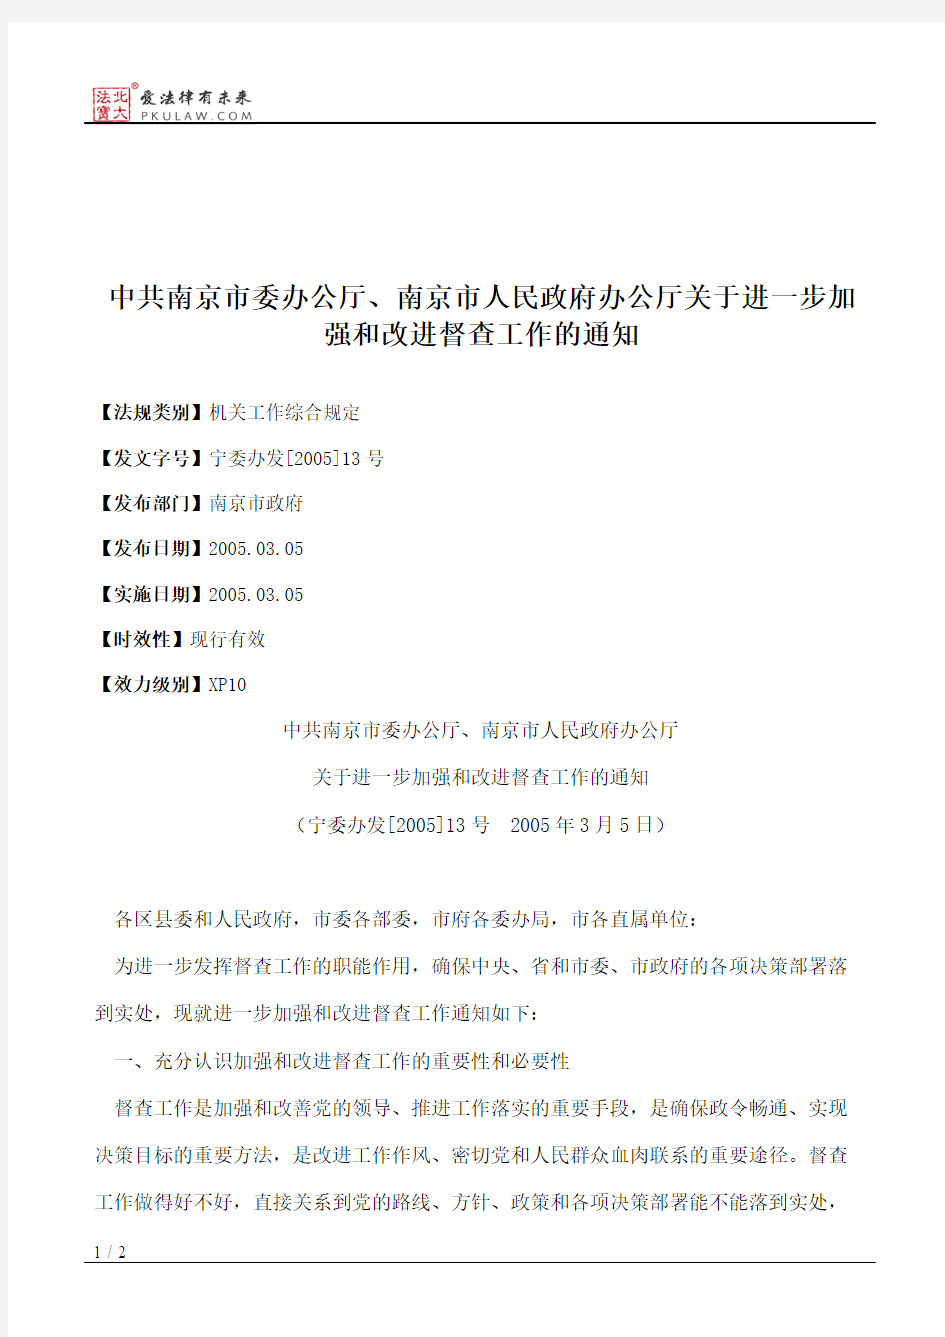 中共南京市委办公厅、南京市人民政府办公厅关于进一步加强和改进